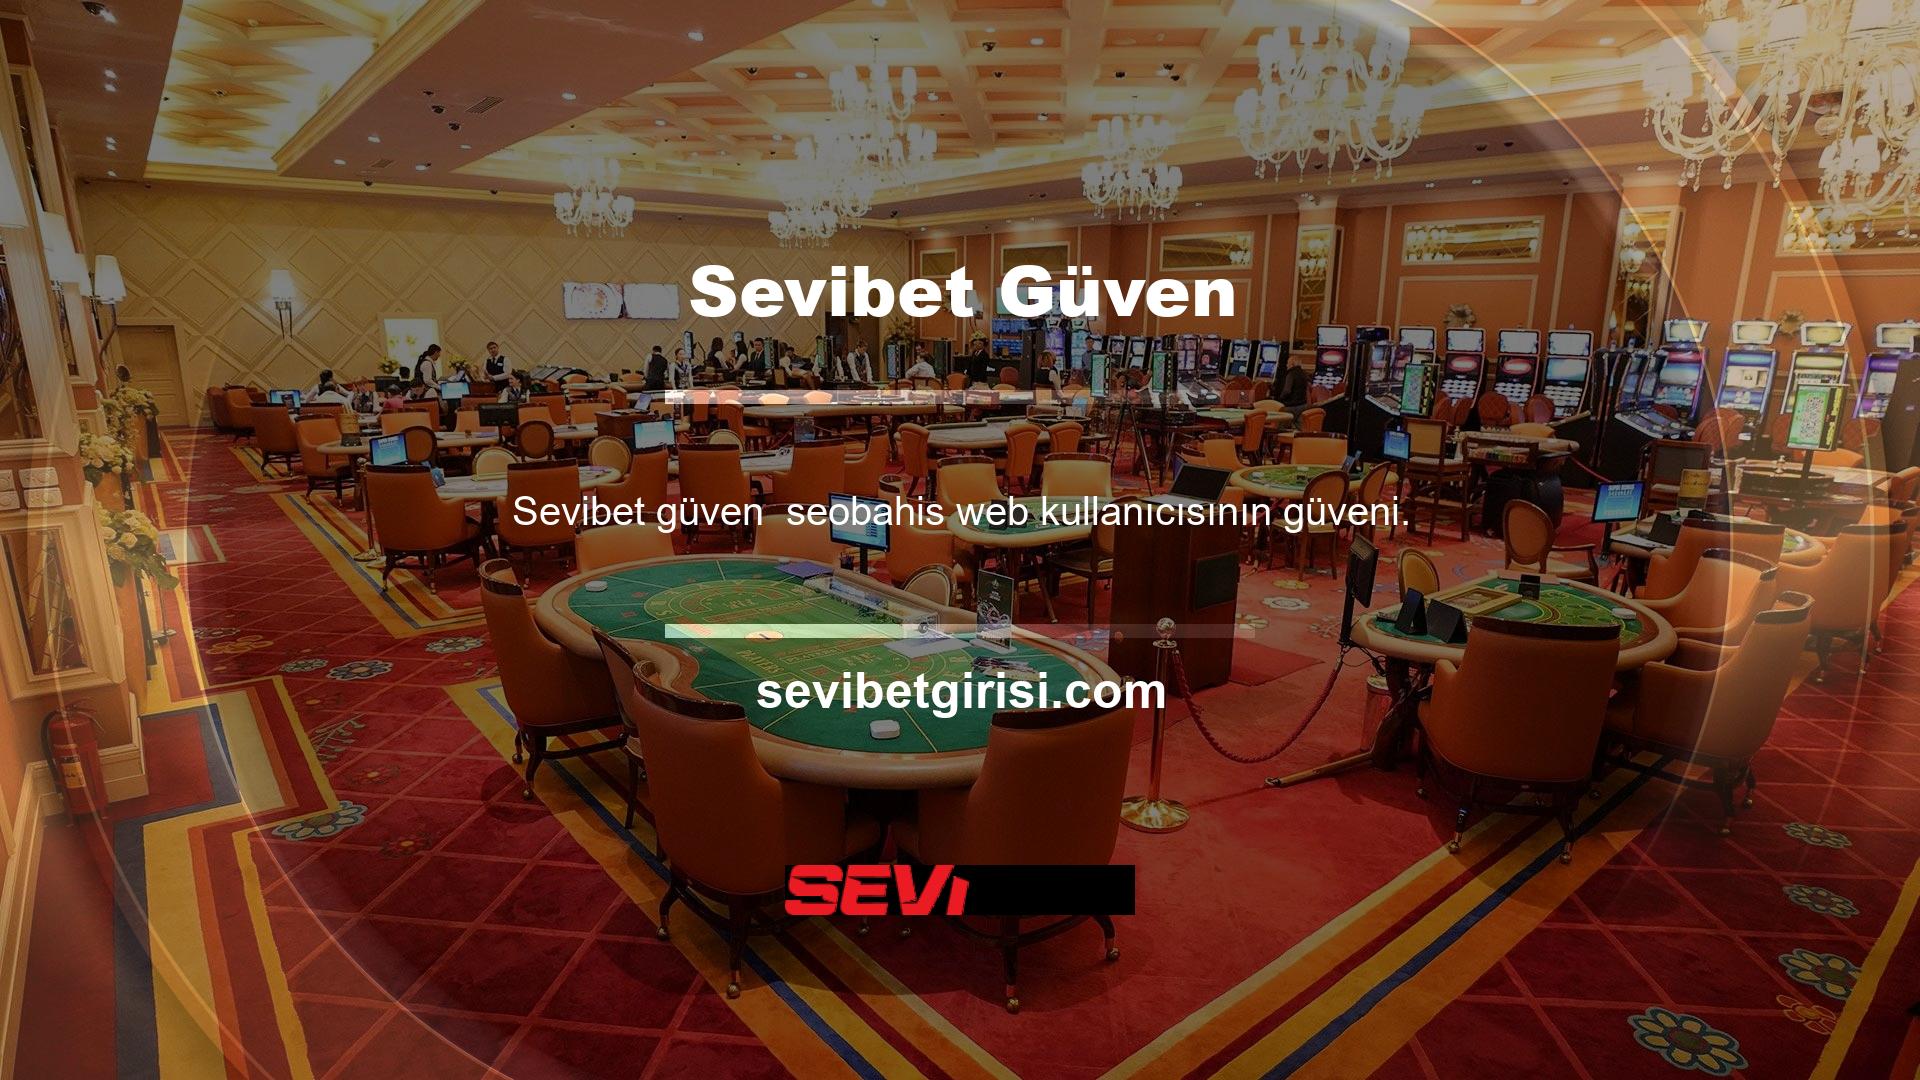 Sevibet, kısa sürede kullanıcılarının saygısını ve güvenini kazanan bir web sitesi haline gelen bir çevrimiçi bahis ve canlı casino hizmetleri şirketidir